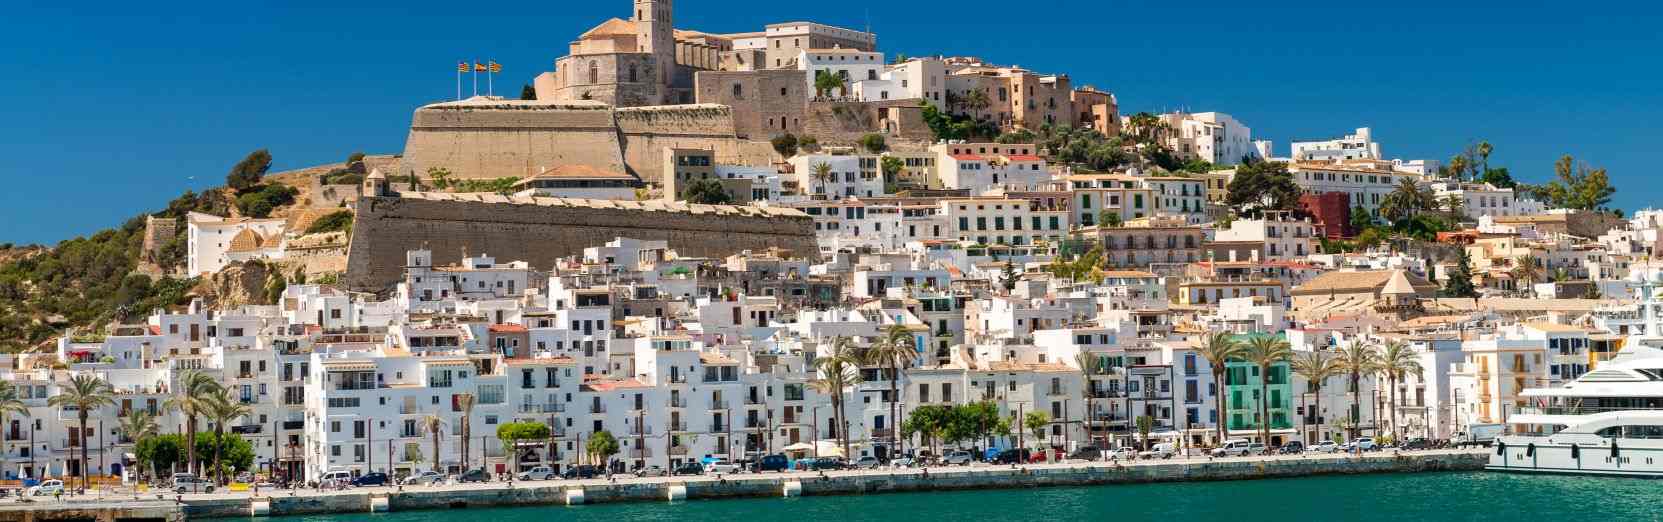 Mietwagen ohne Kreditkarte auf Ibiza